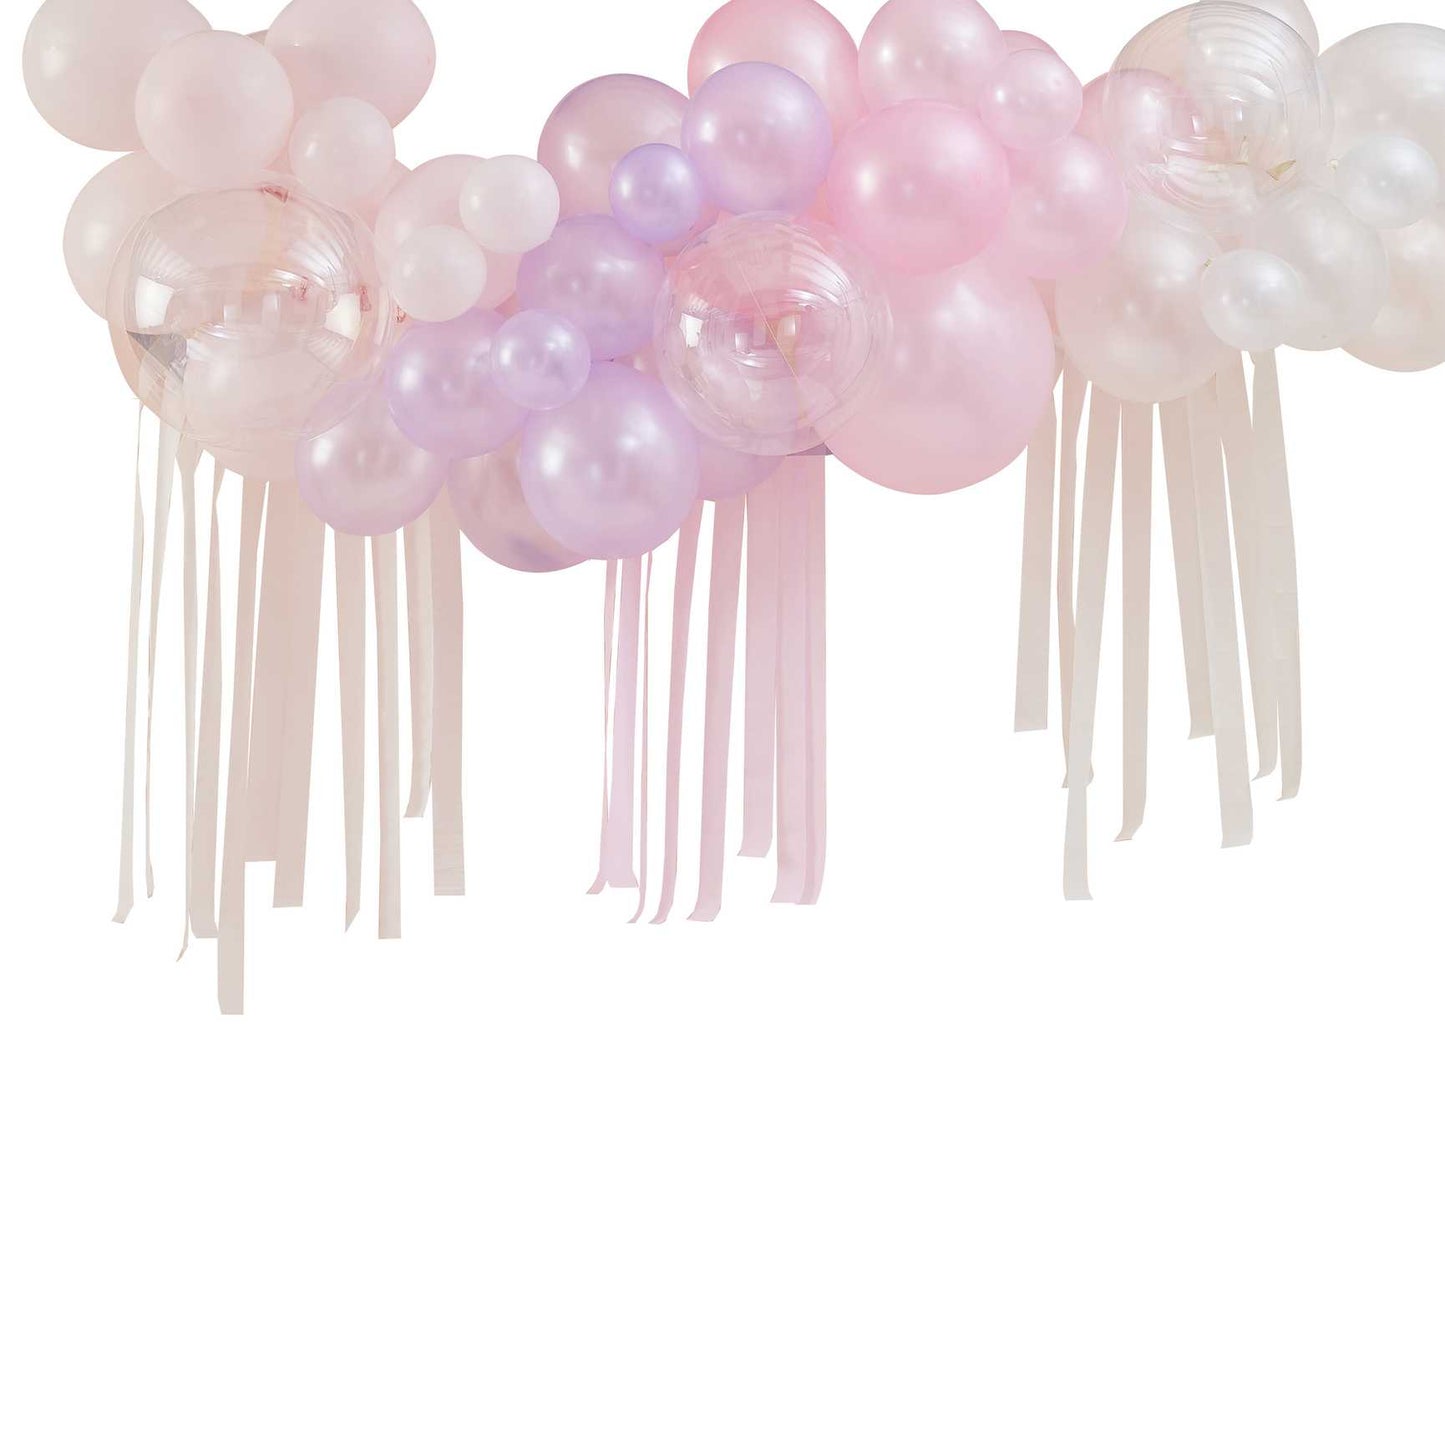 Kit de arco de globos en colores pastel, perla y marfil